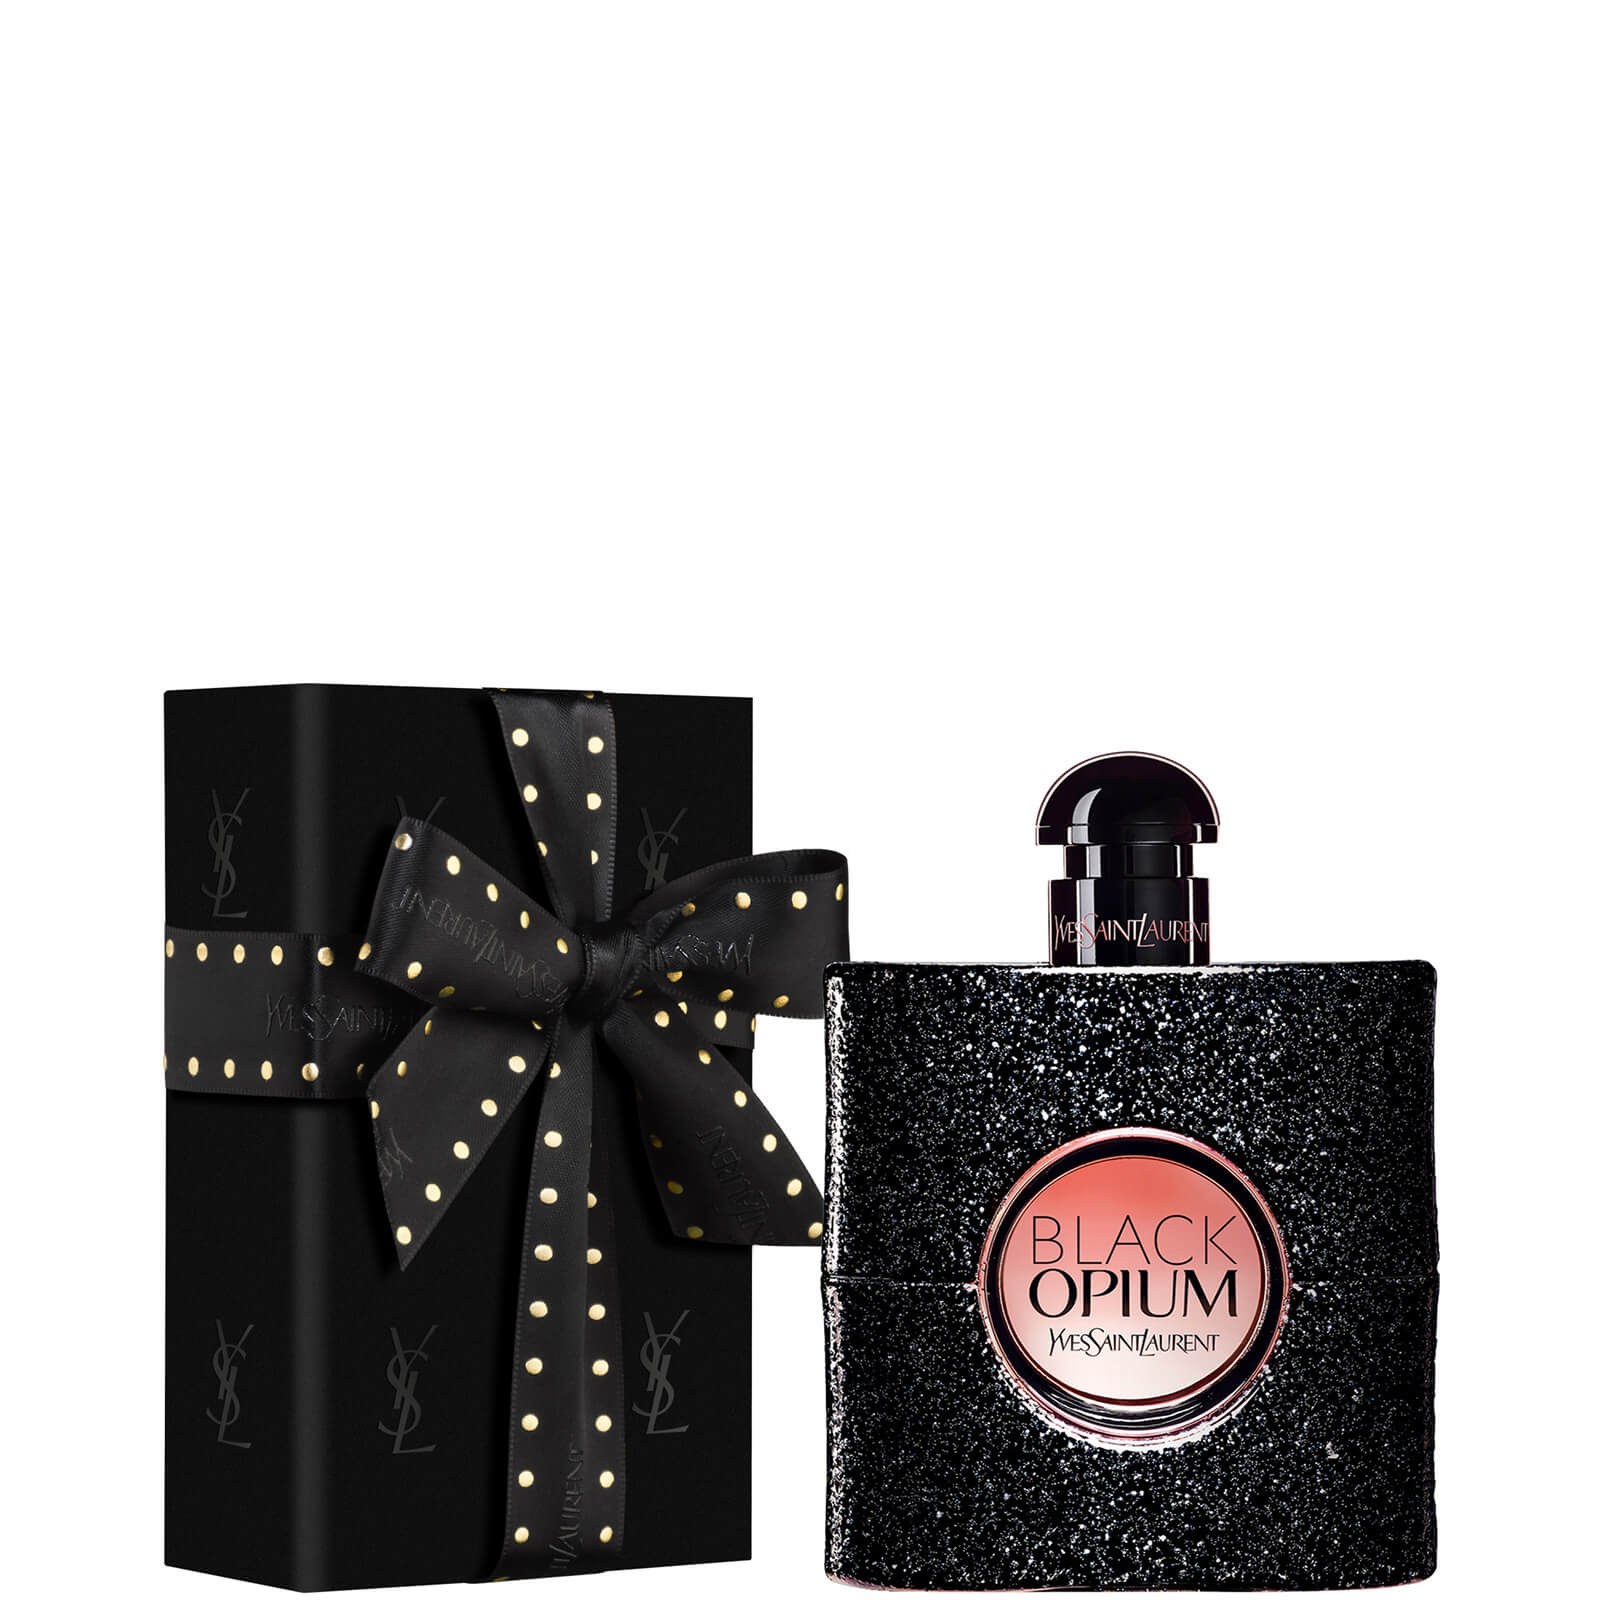 Yves Saint Laurent Pre-Wrapped Black Opium Eau de Parfum - 90ml